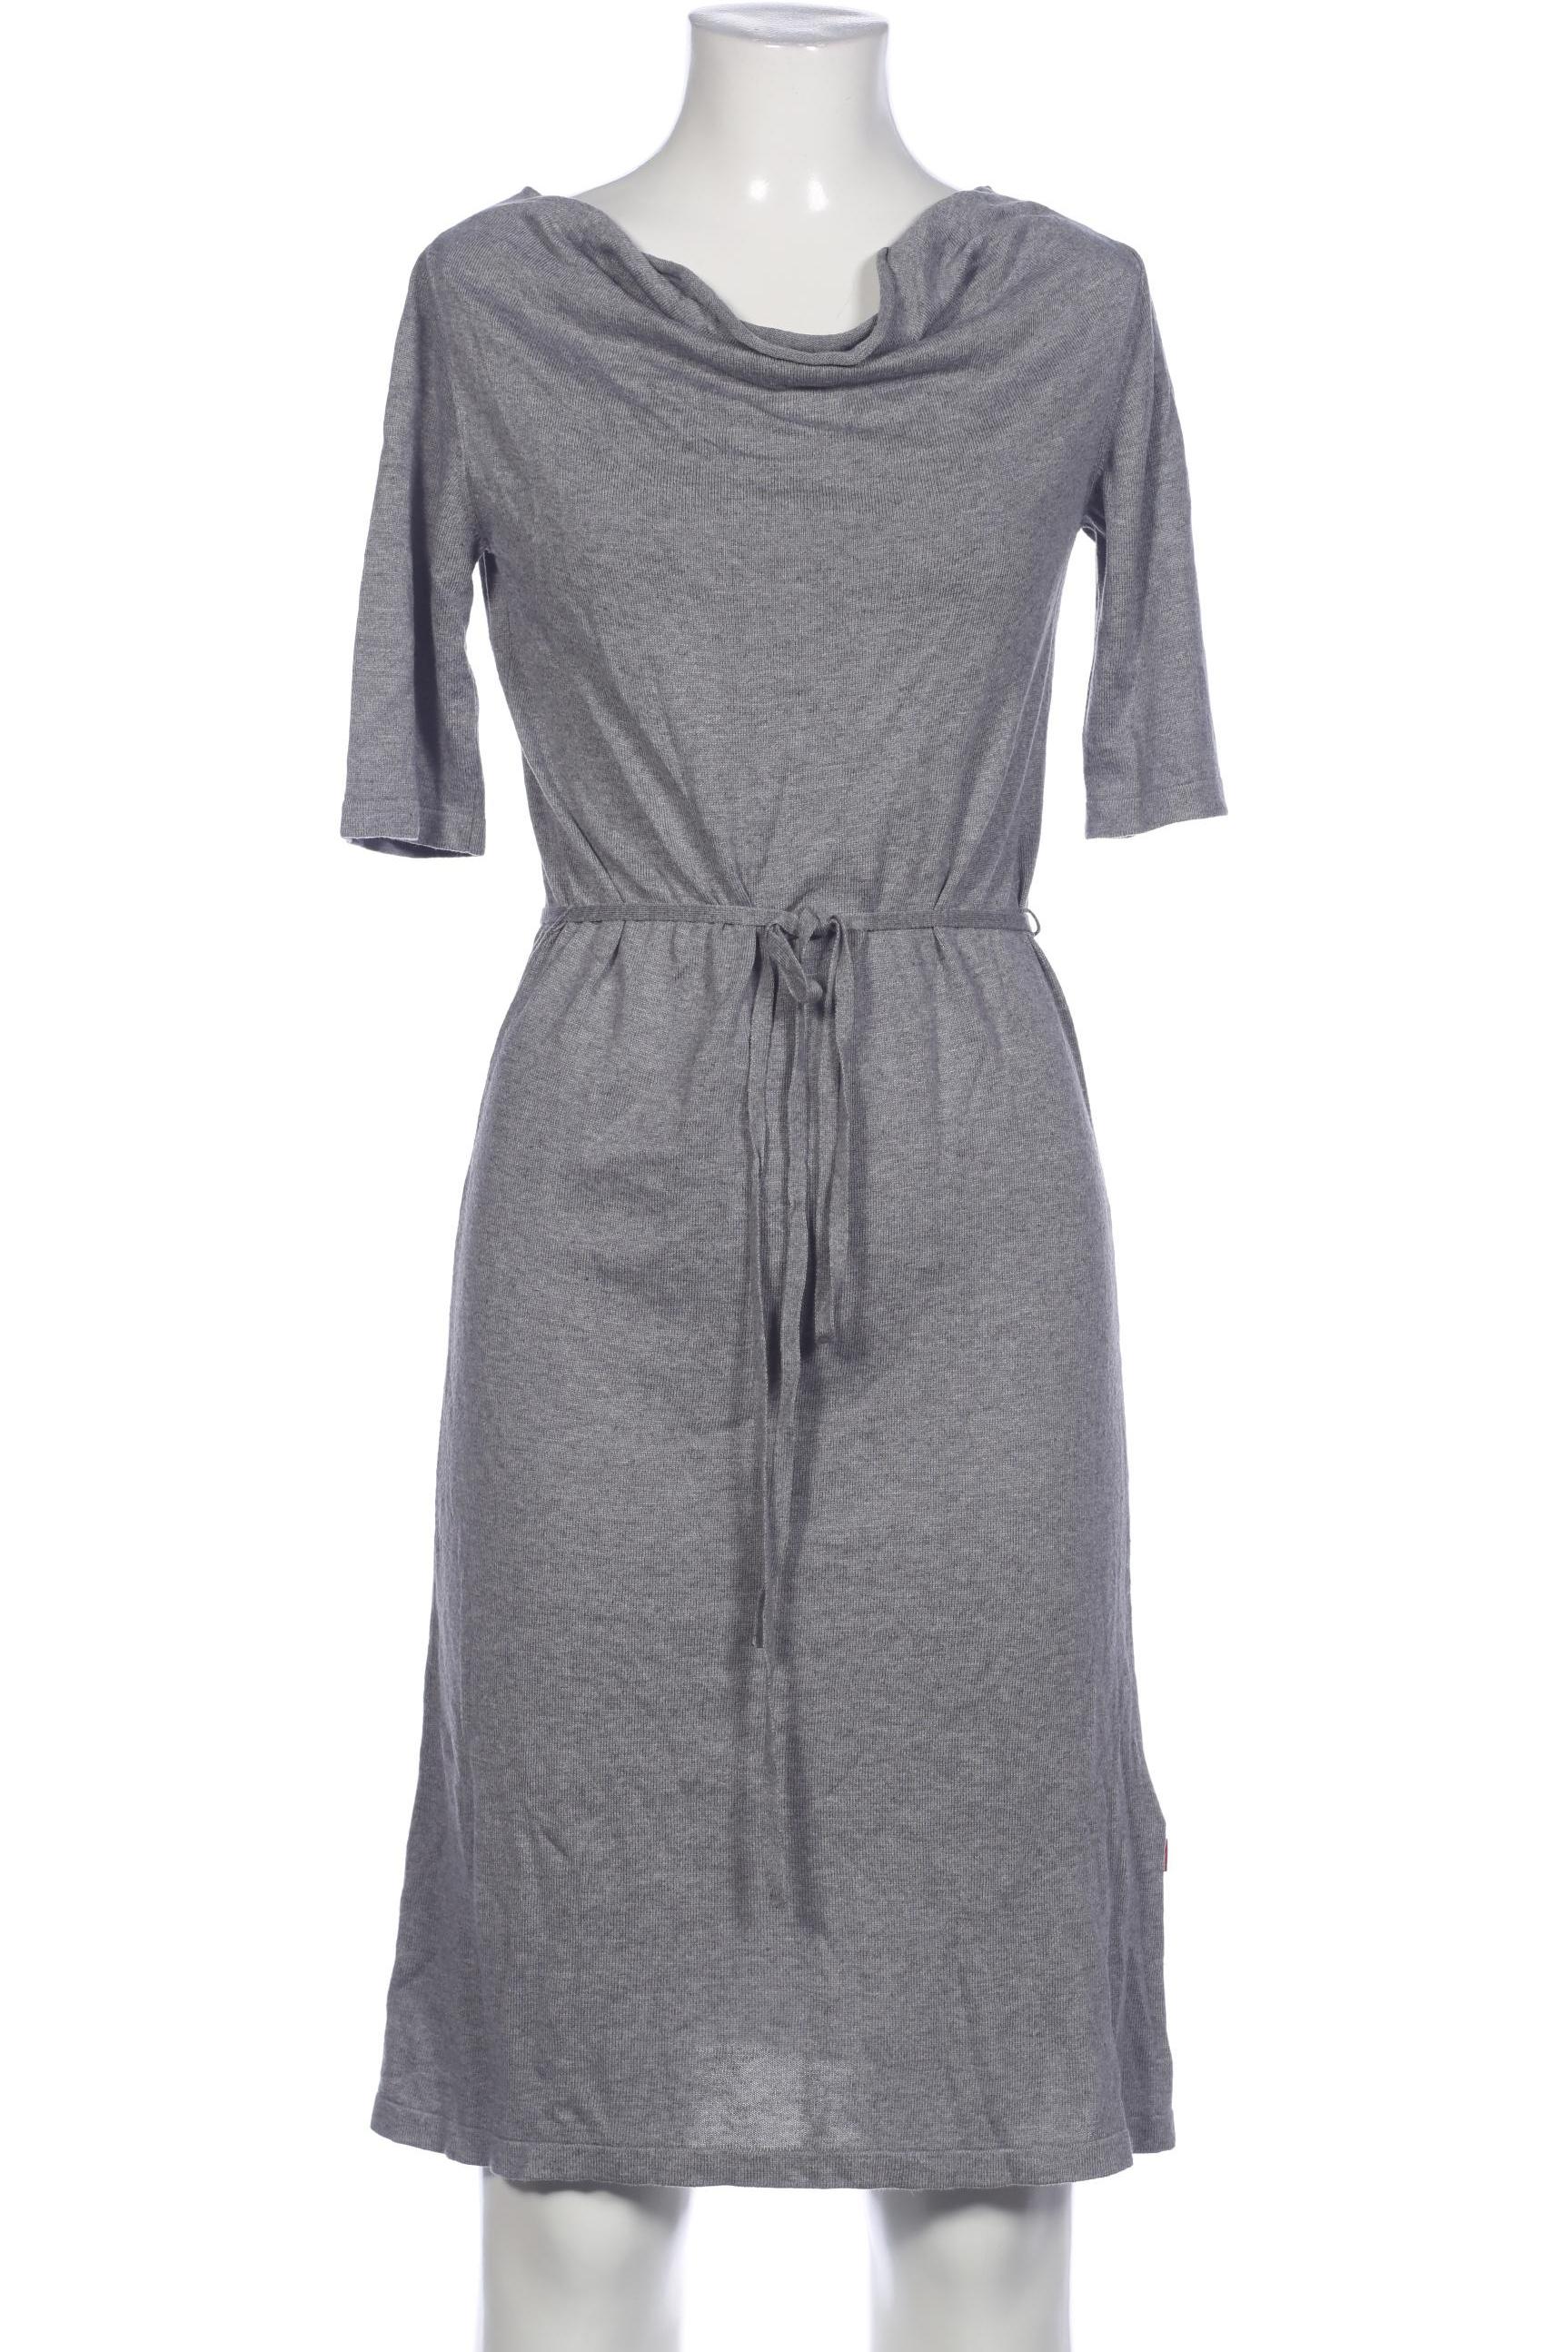 Jackpot Damen Kleid, grau, Gr. 36 von Jackpot